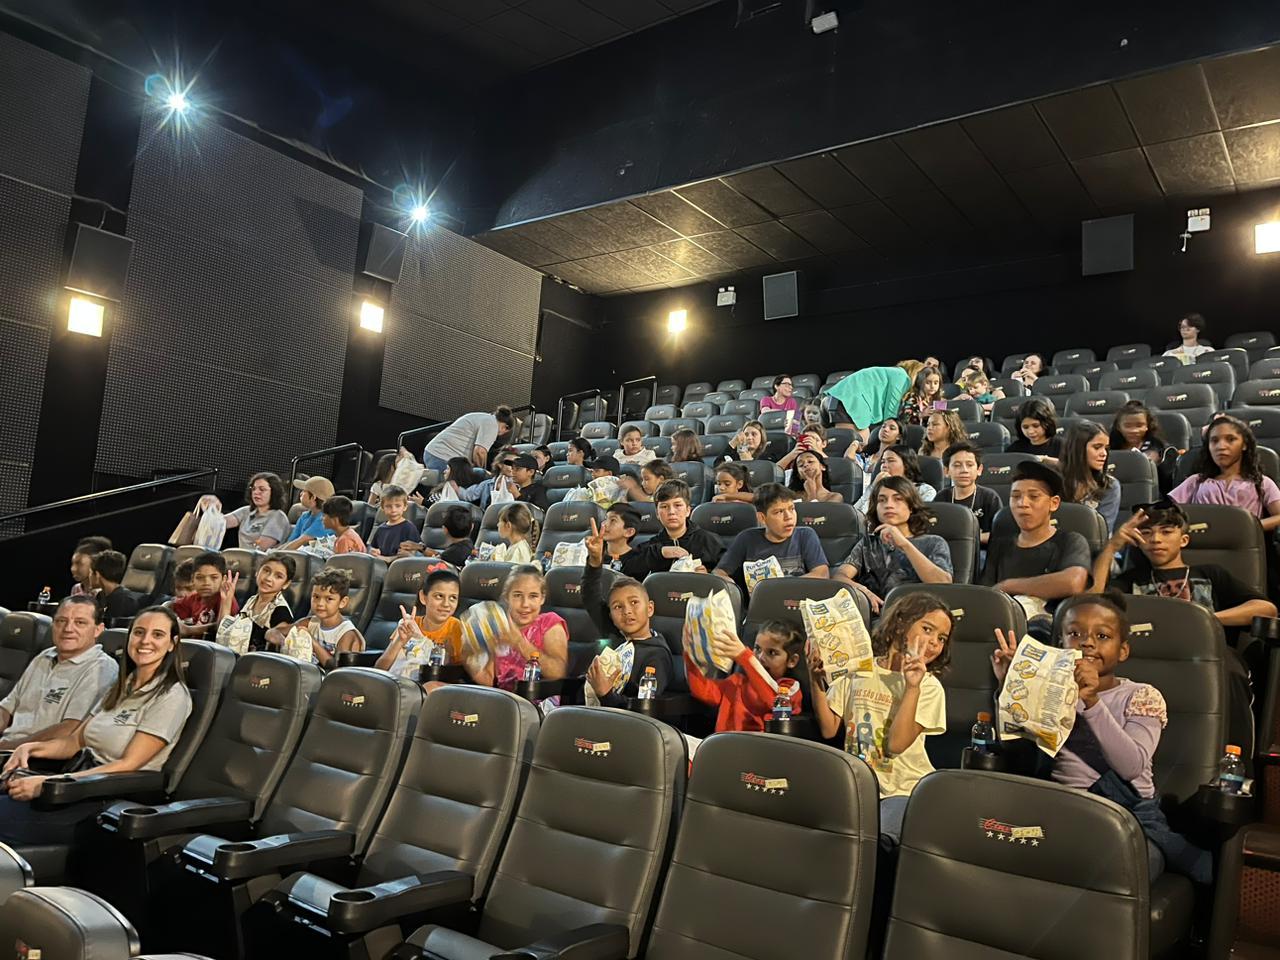 Projeto “Em busca de um sonho” leva crianças e adolescentes de São Ludgero ao cinema